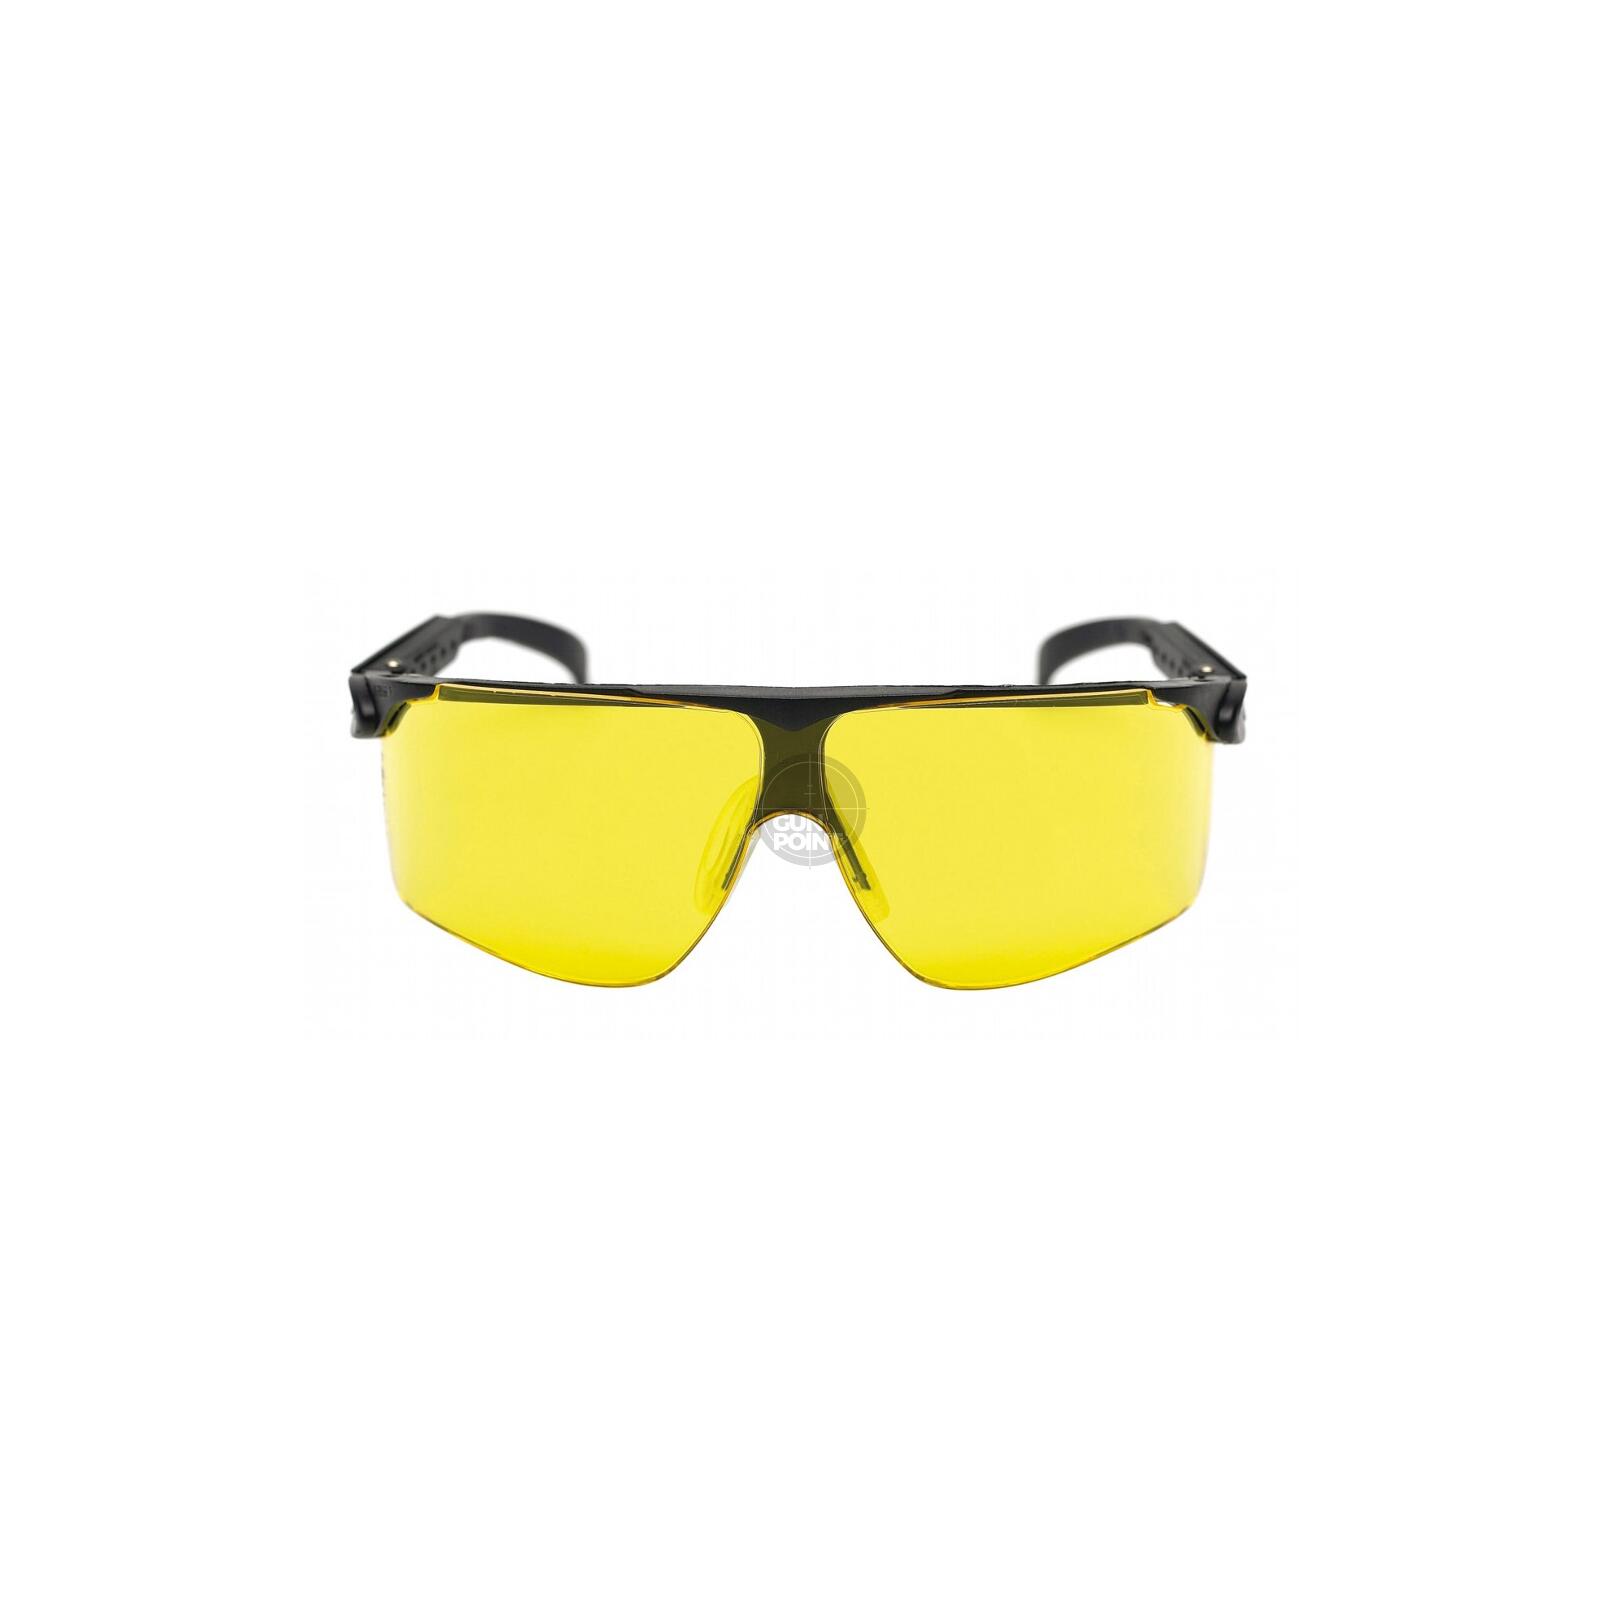 3M Peltor Schießbrille Maxim Ballistic gelb